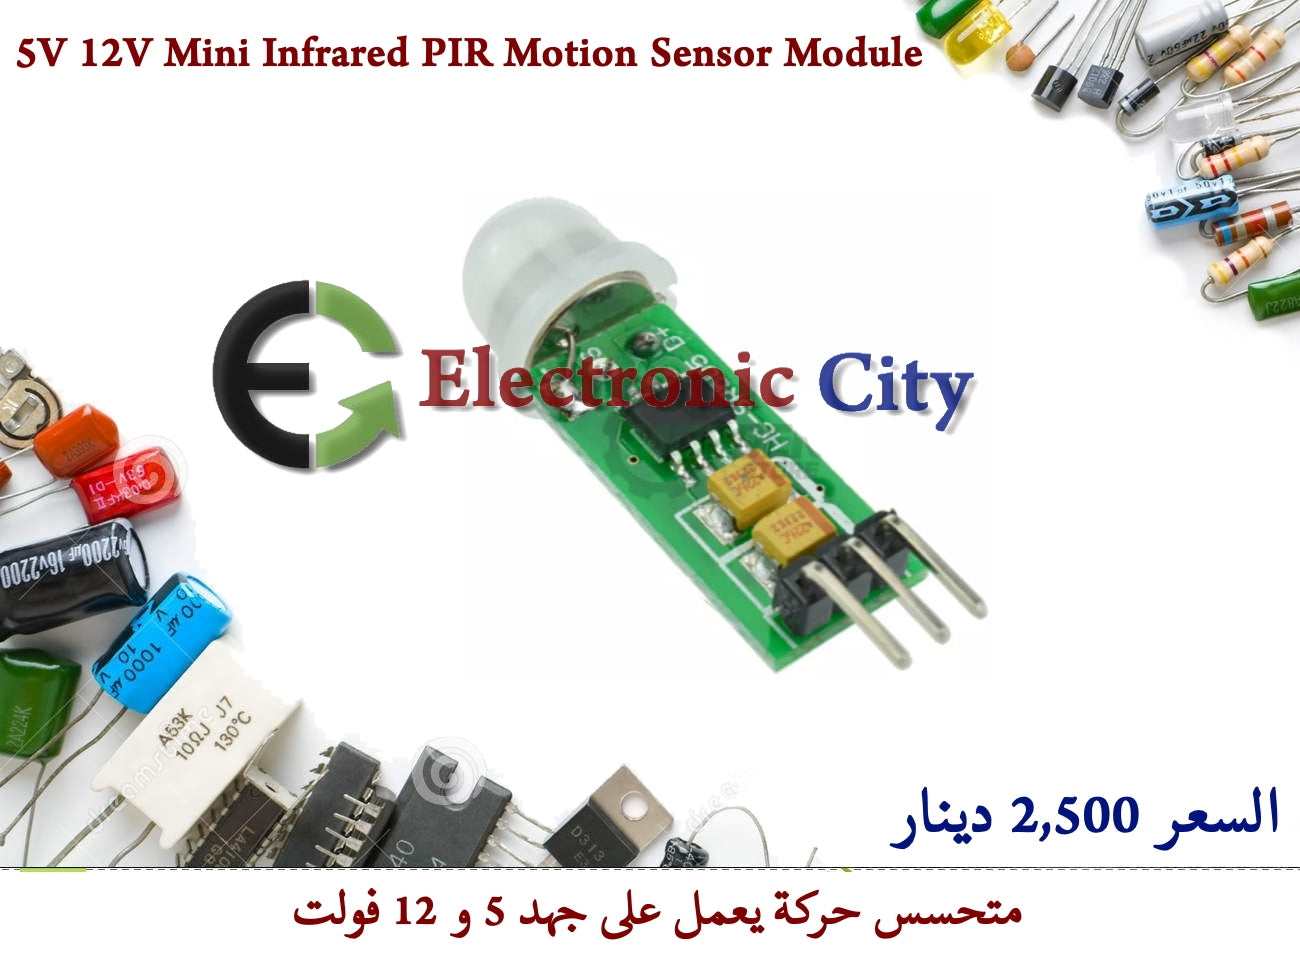 5V 12V Mini Infrared PIR Motion Sensor Switch Module